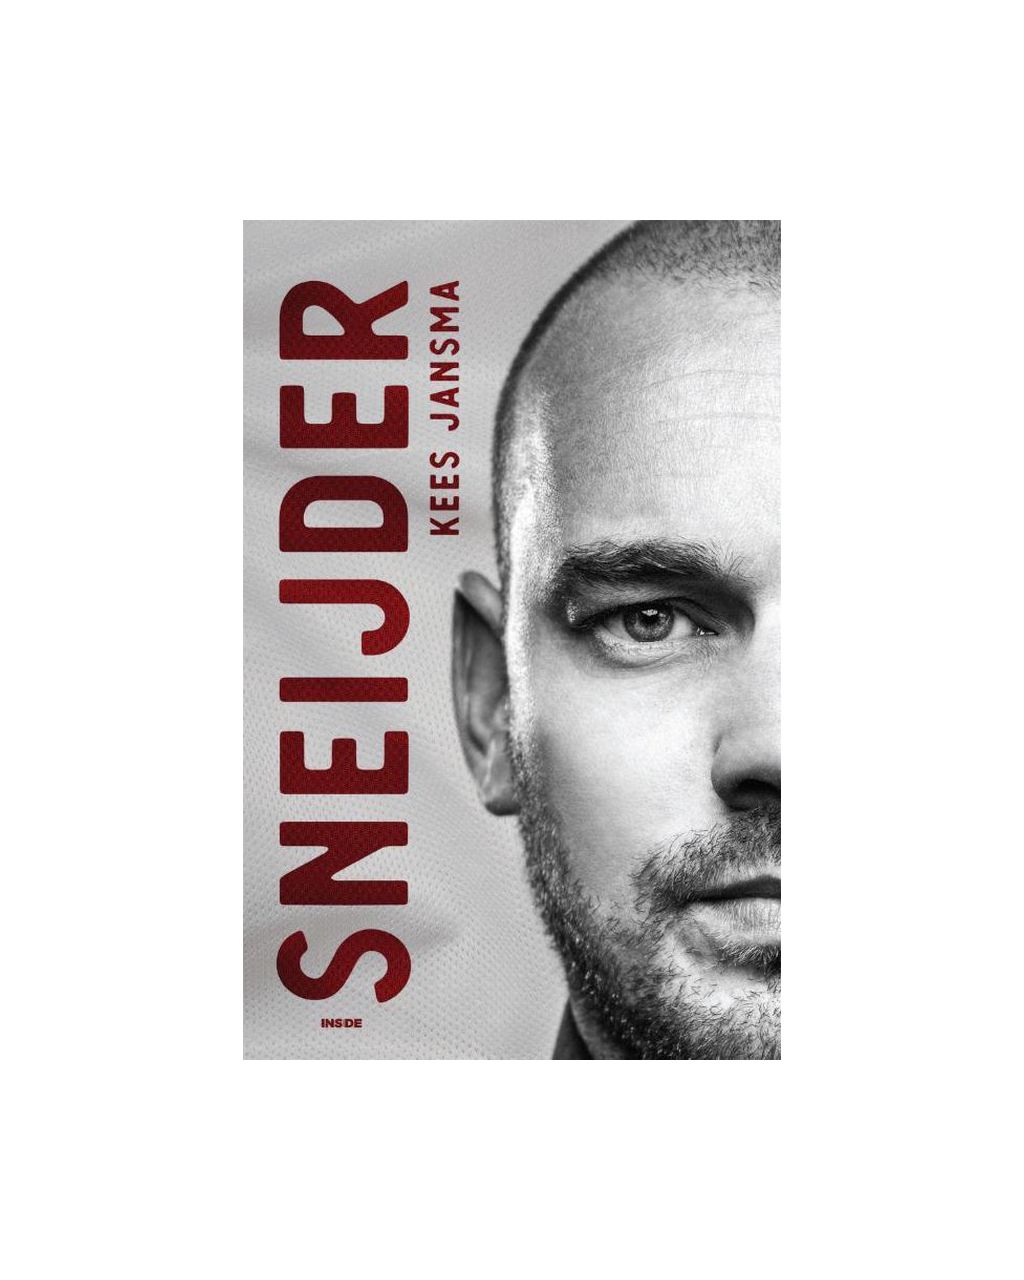 Sneijder  - Kees Jansma  NVT 061374-001-0